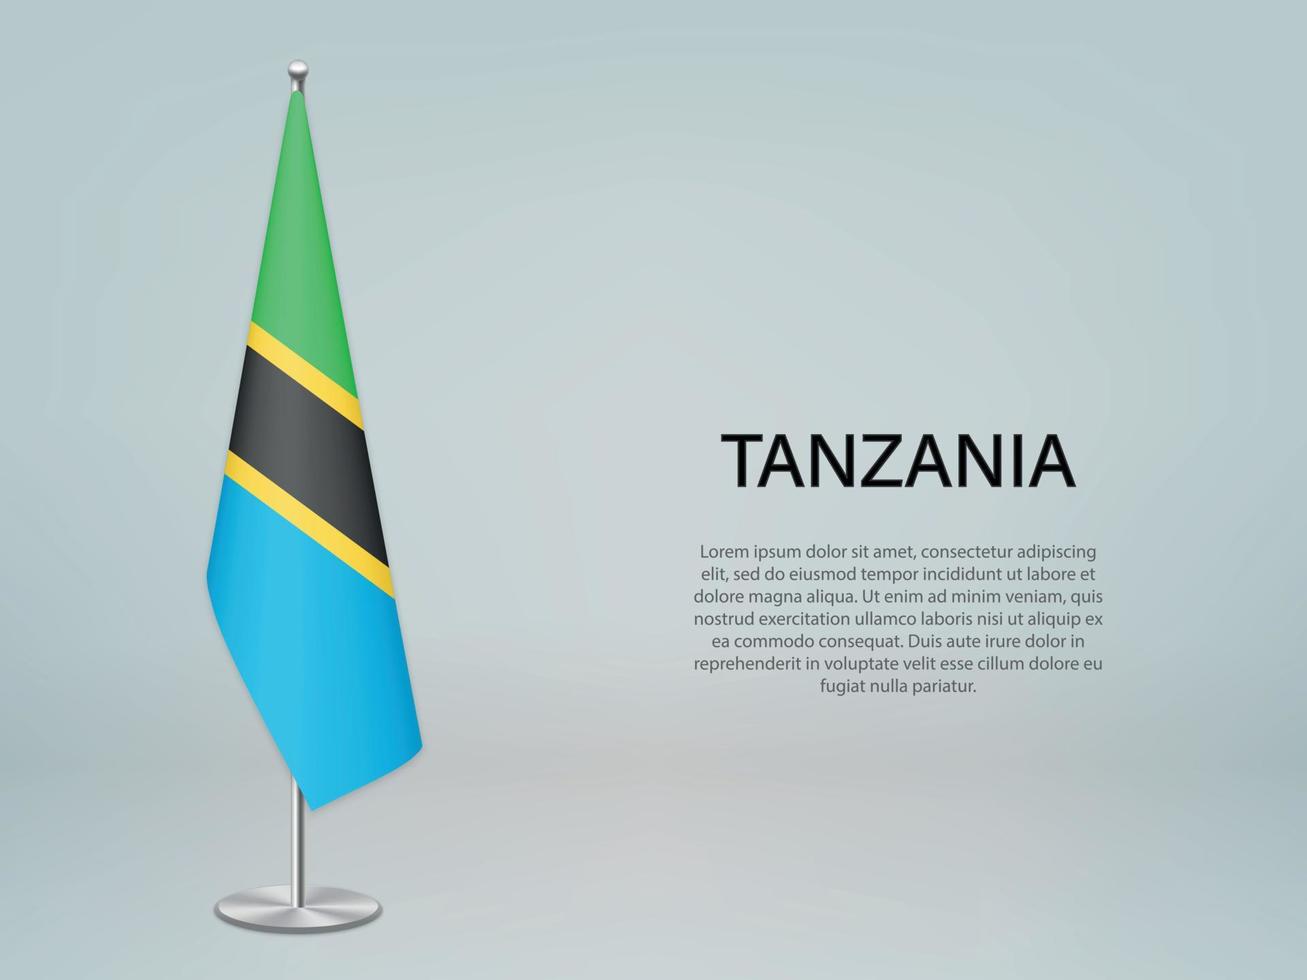 bandera colgante de tanzania en el stand. plantilla para banner de conferencia vector